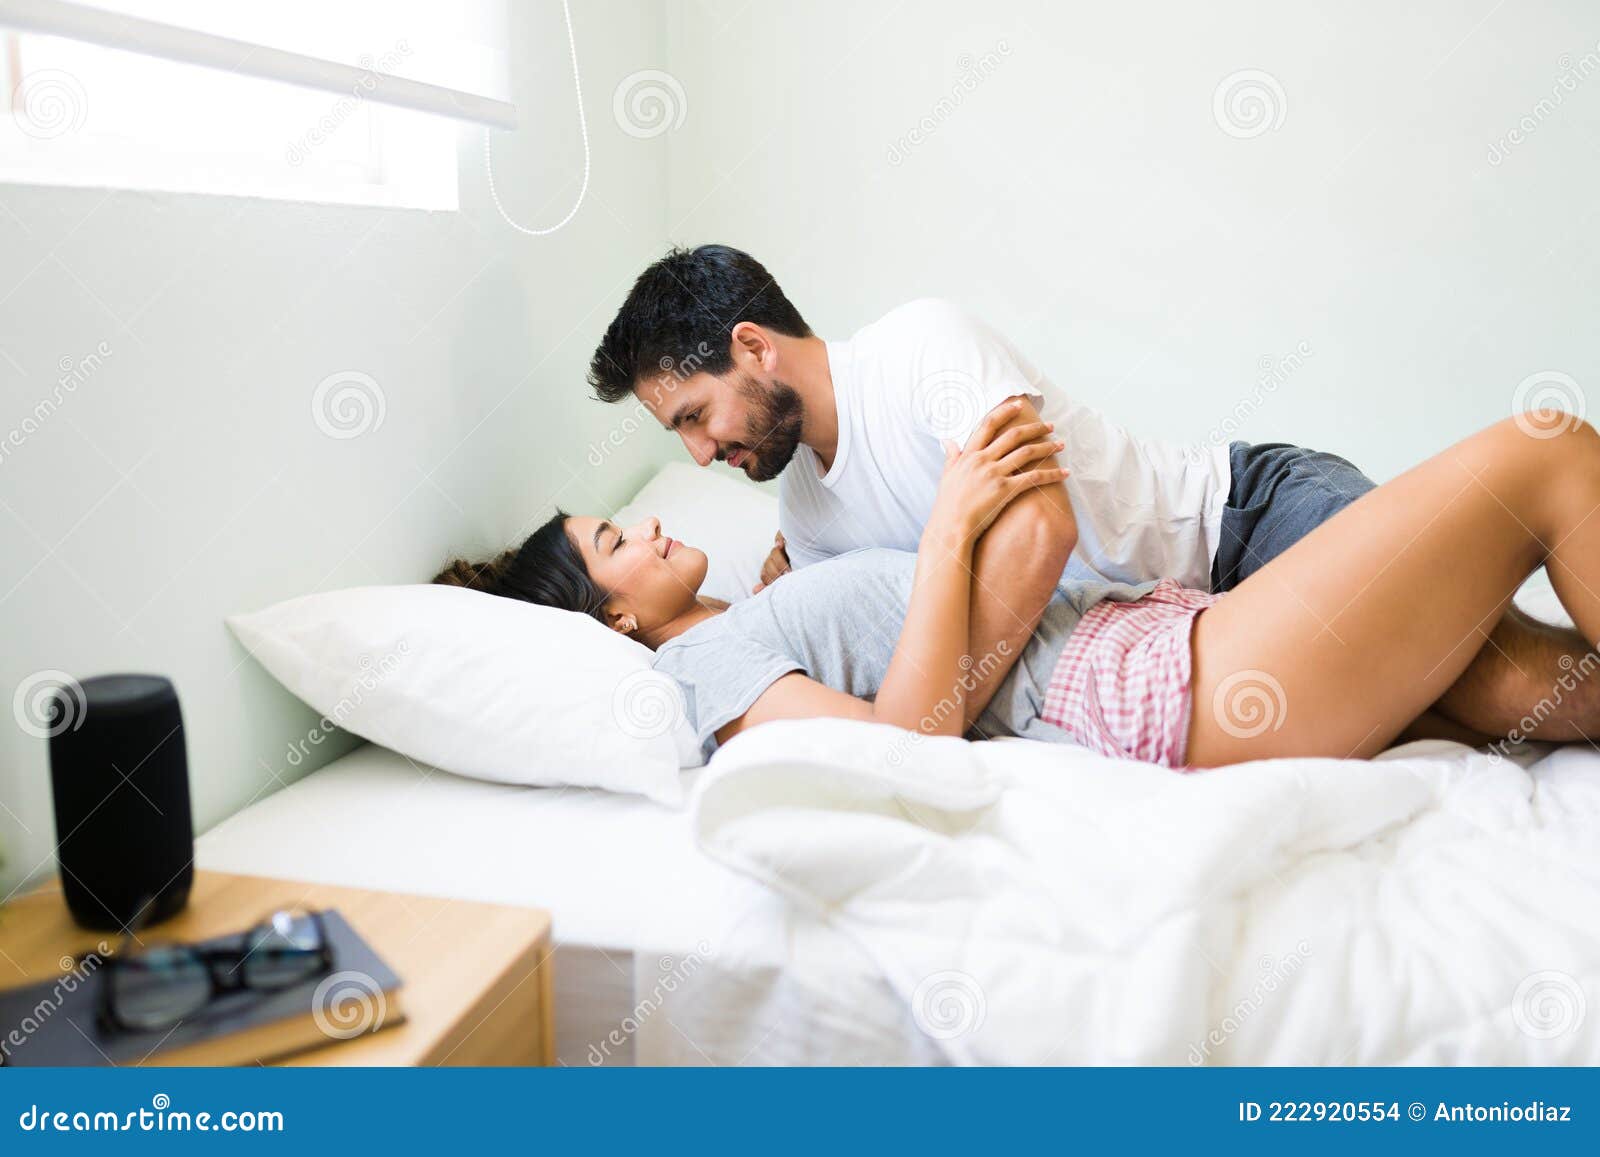 boyfriend girlfriend in bed